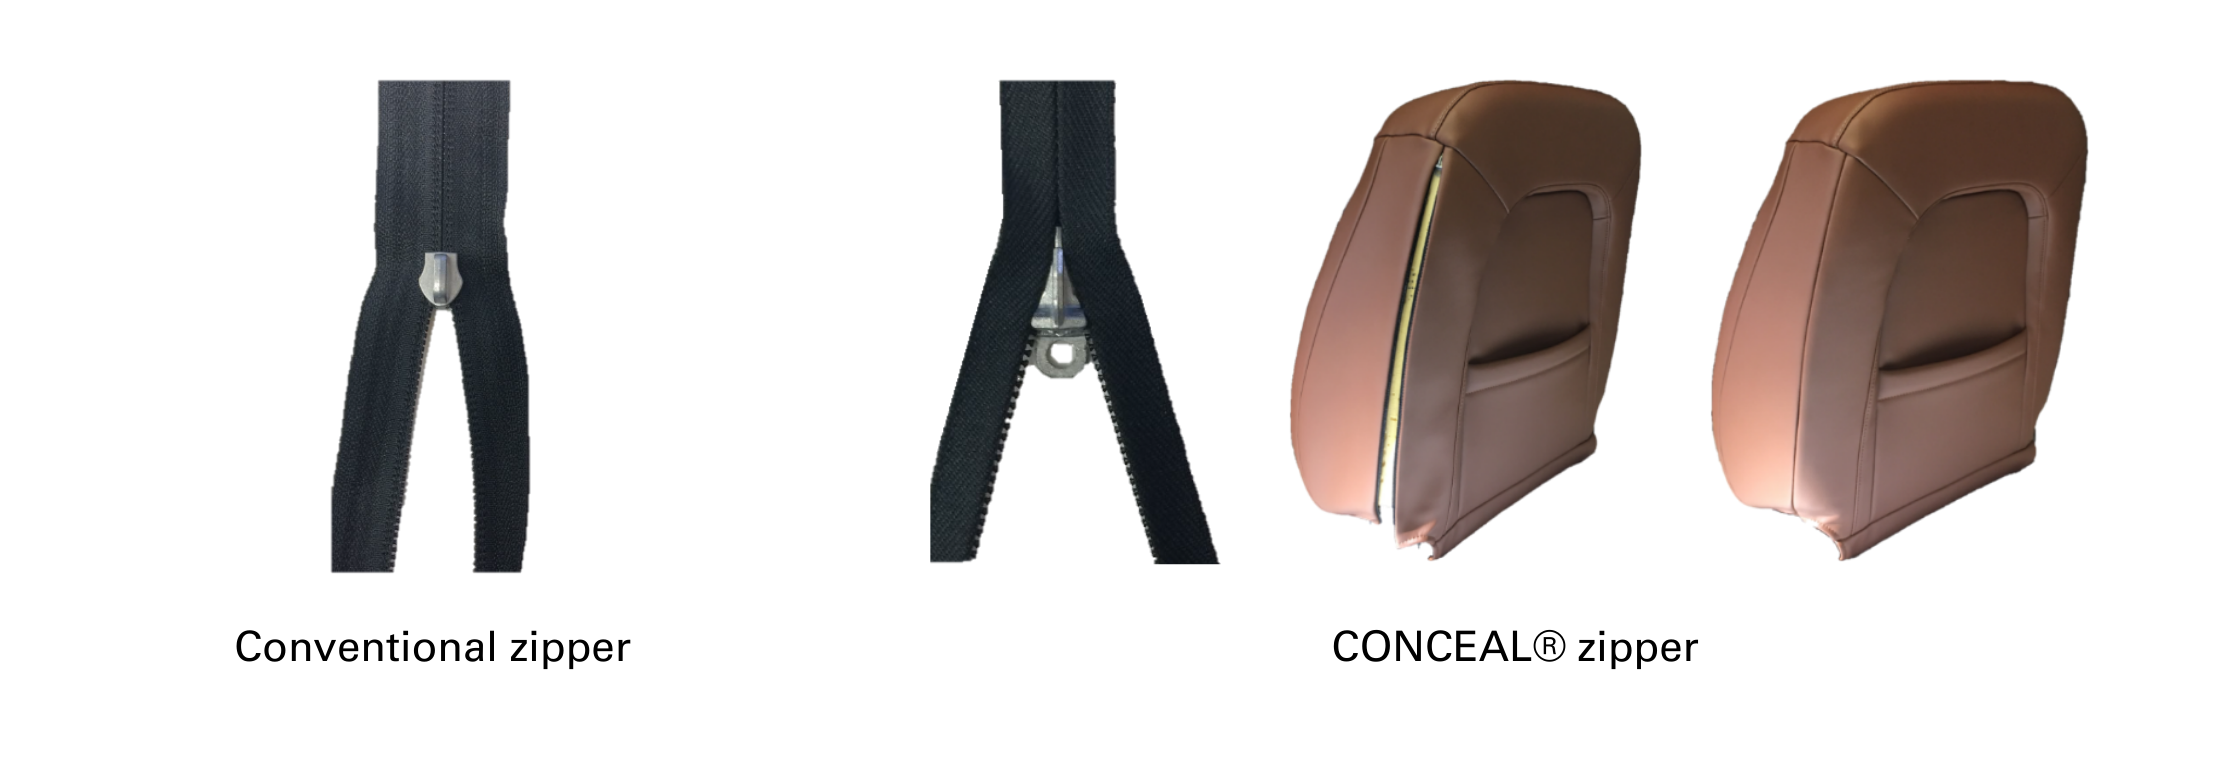 CONCEAL® zipper